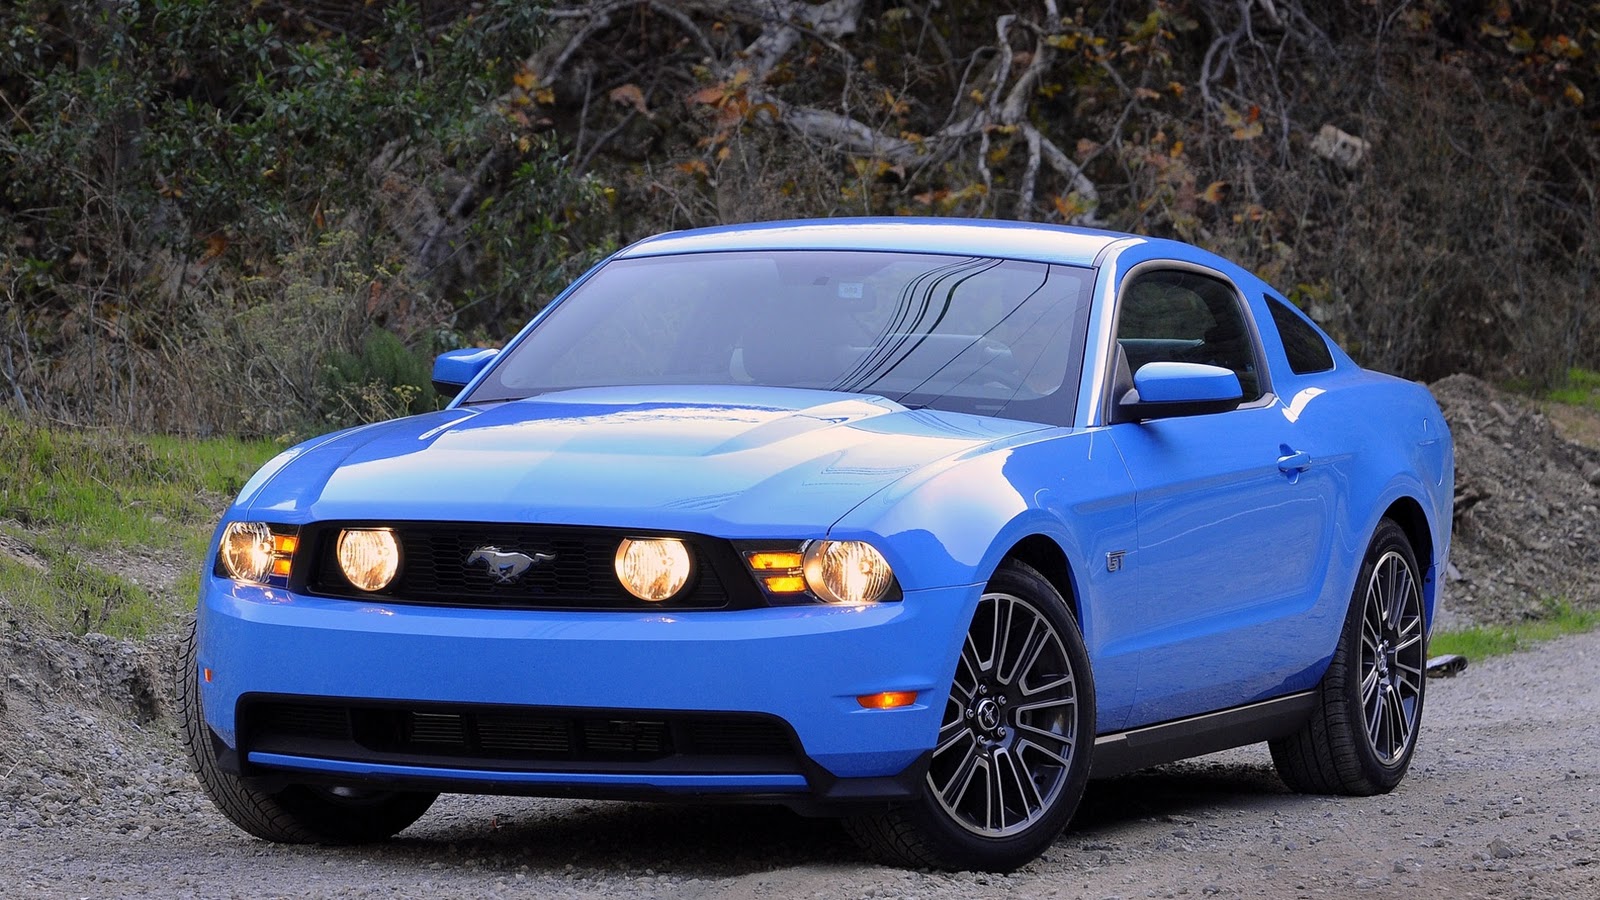 Ford Mustang desktop wallpapers | Full HD Wallpapers 2015
 2015 Ford Mustang Wallpaper Hd